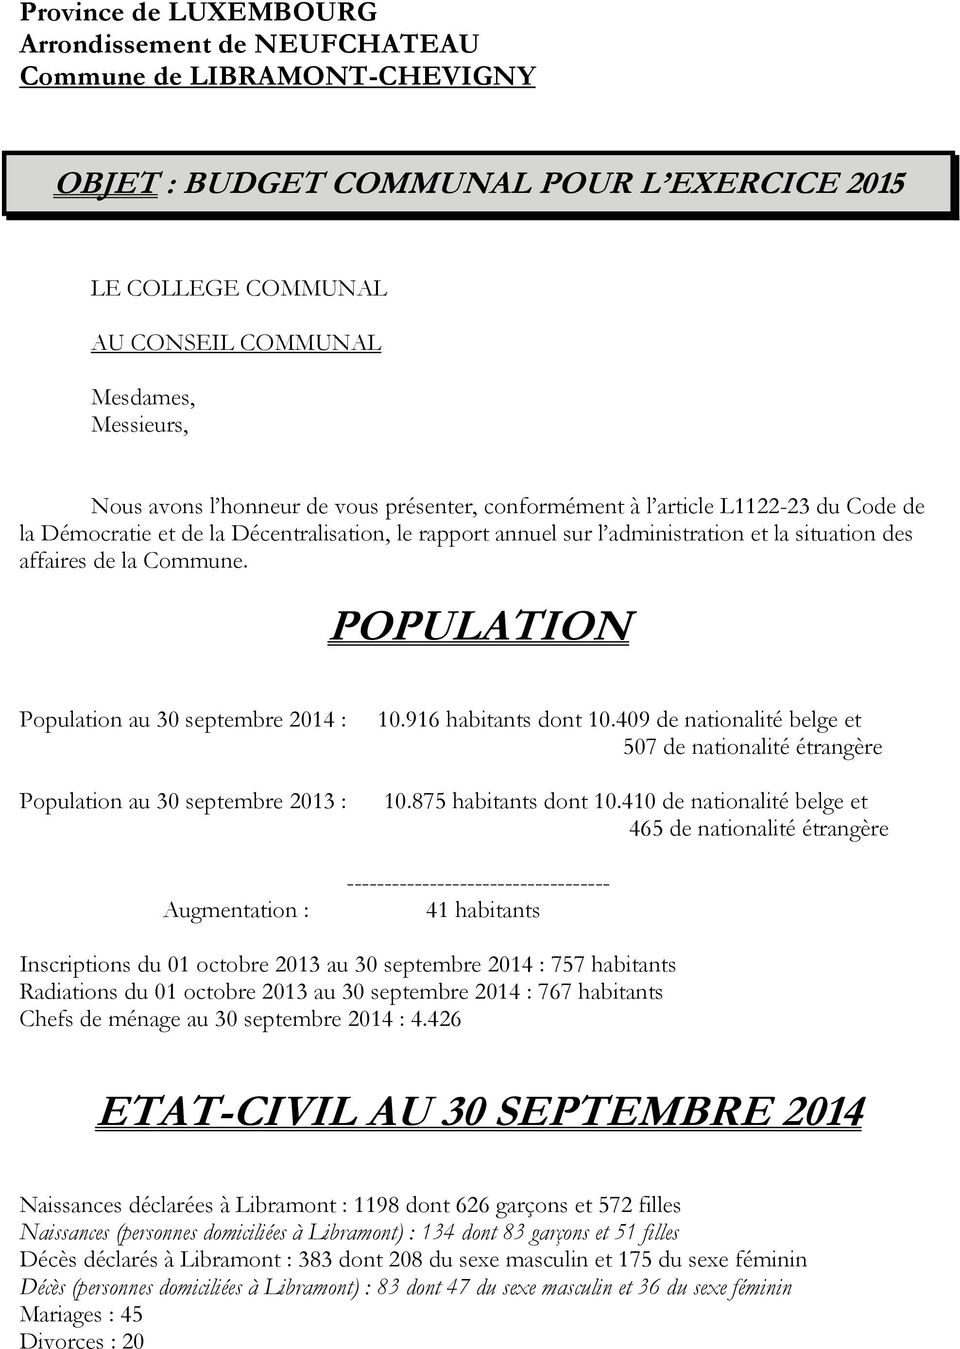 POPULATION Population au 30 septembre 2014 : Population au 30 septembre 2013 : Augmentation : 10.916 habitants dont 10.409 de nationalité belge et 507 de nationalité étrangère 10.